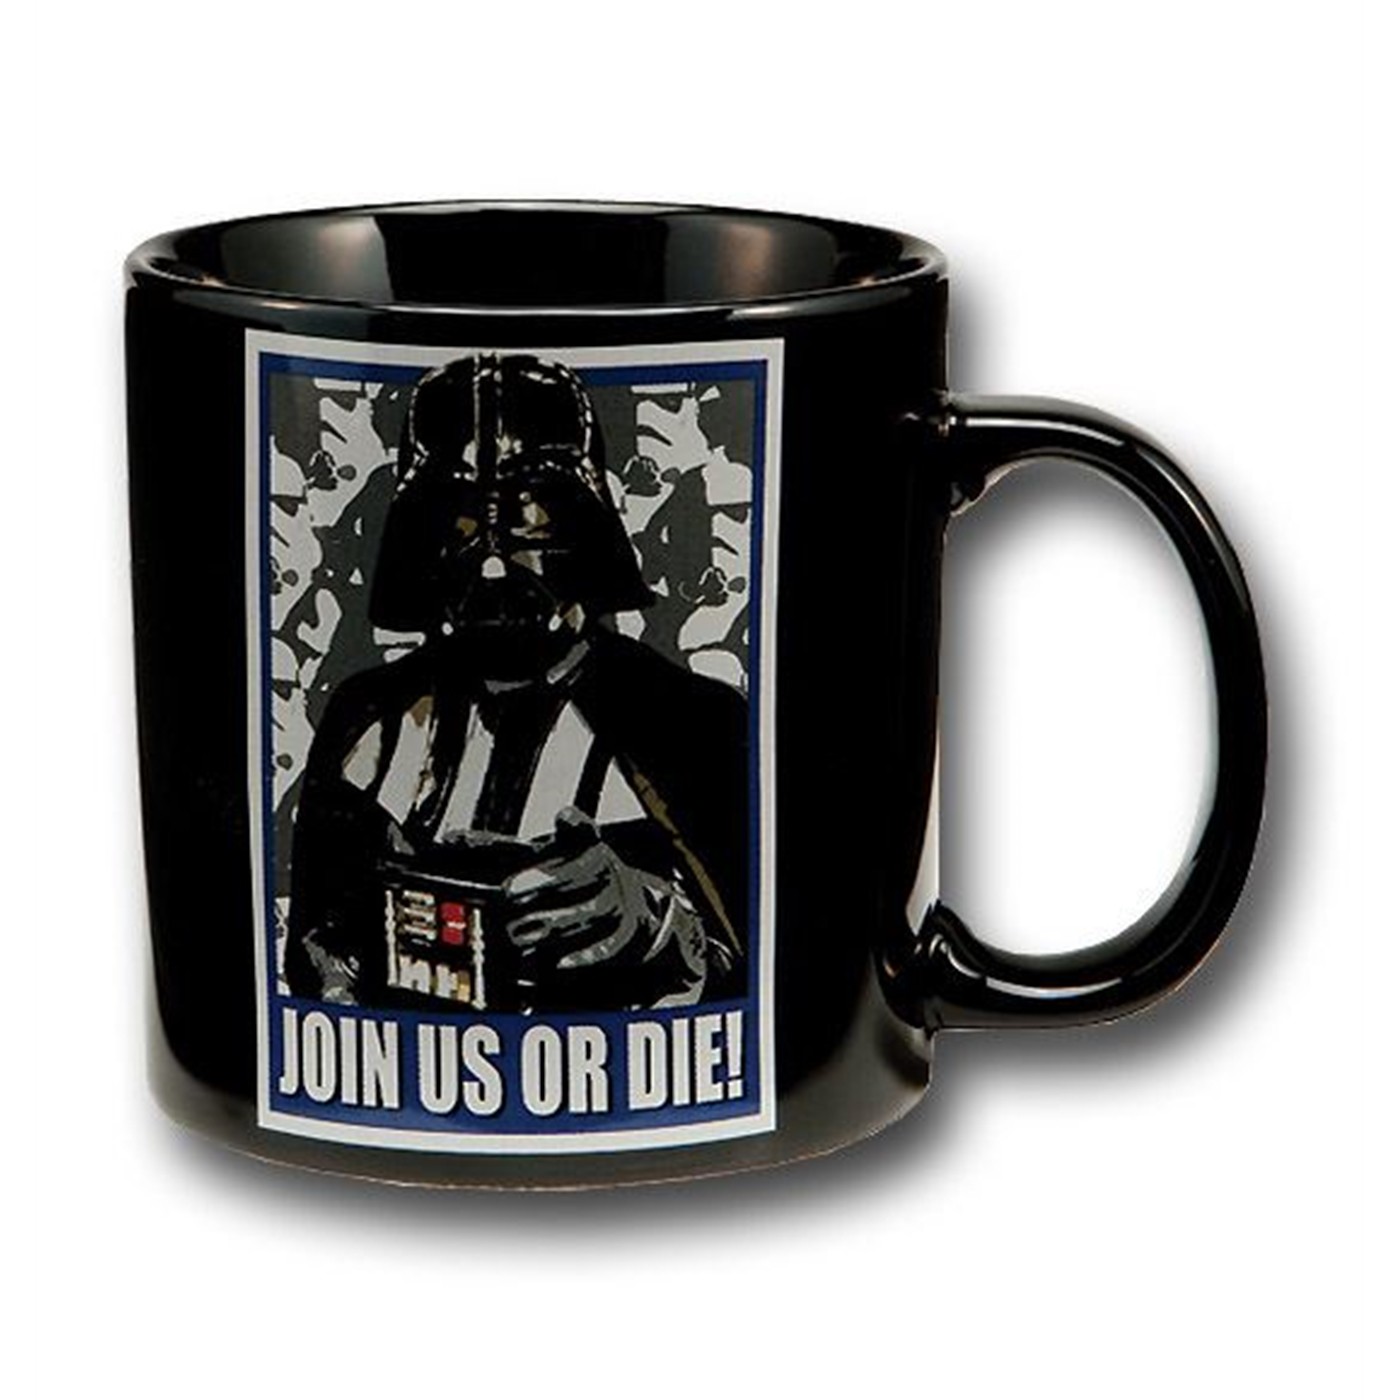 Star Wars Darth Vader 20 oz. Ceramic Mug